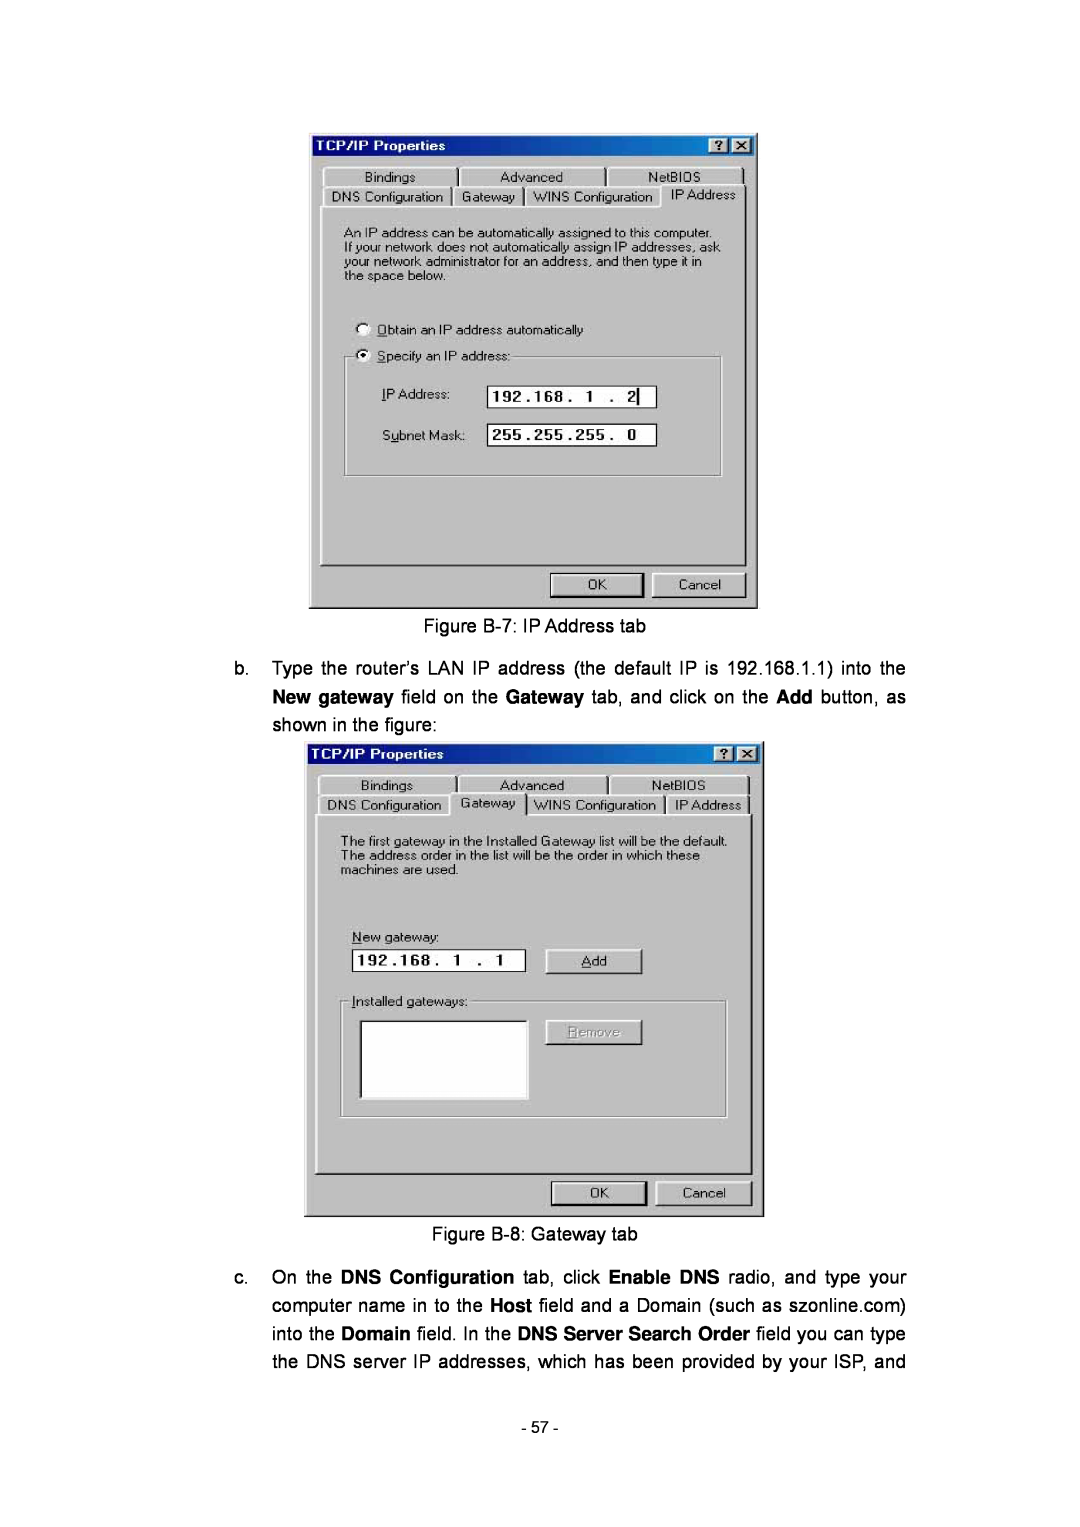 Olitec RW400SG manual Figure B-7 IP Address tab, Figure B-8 Gateway tab 